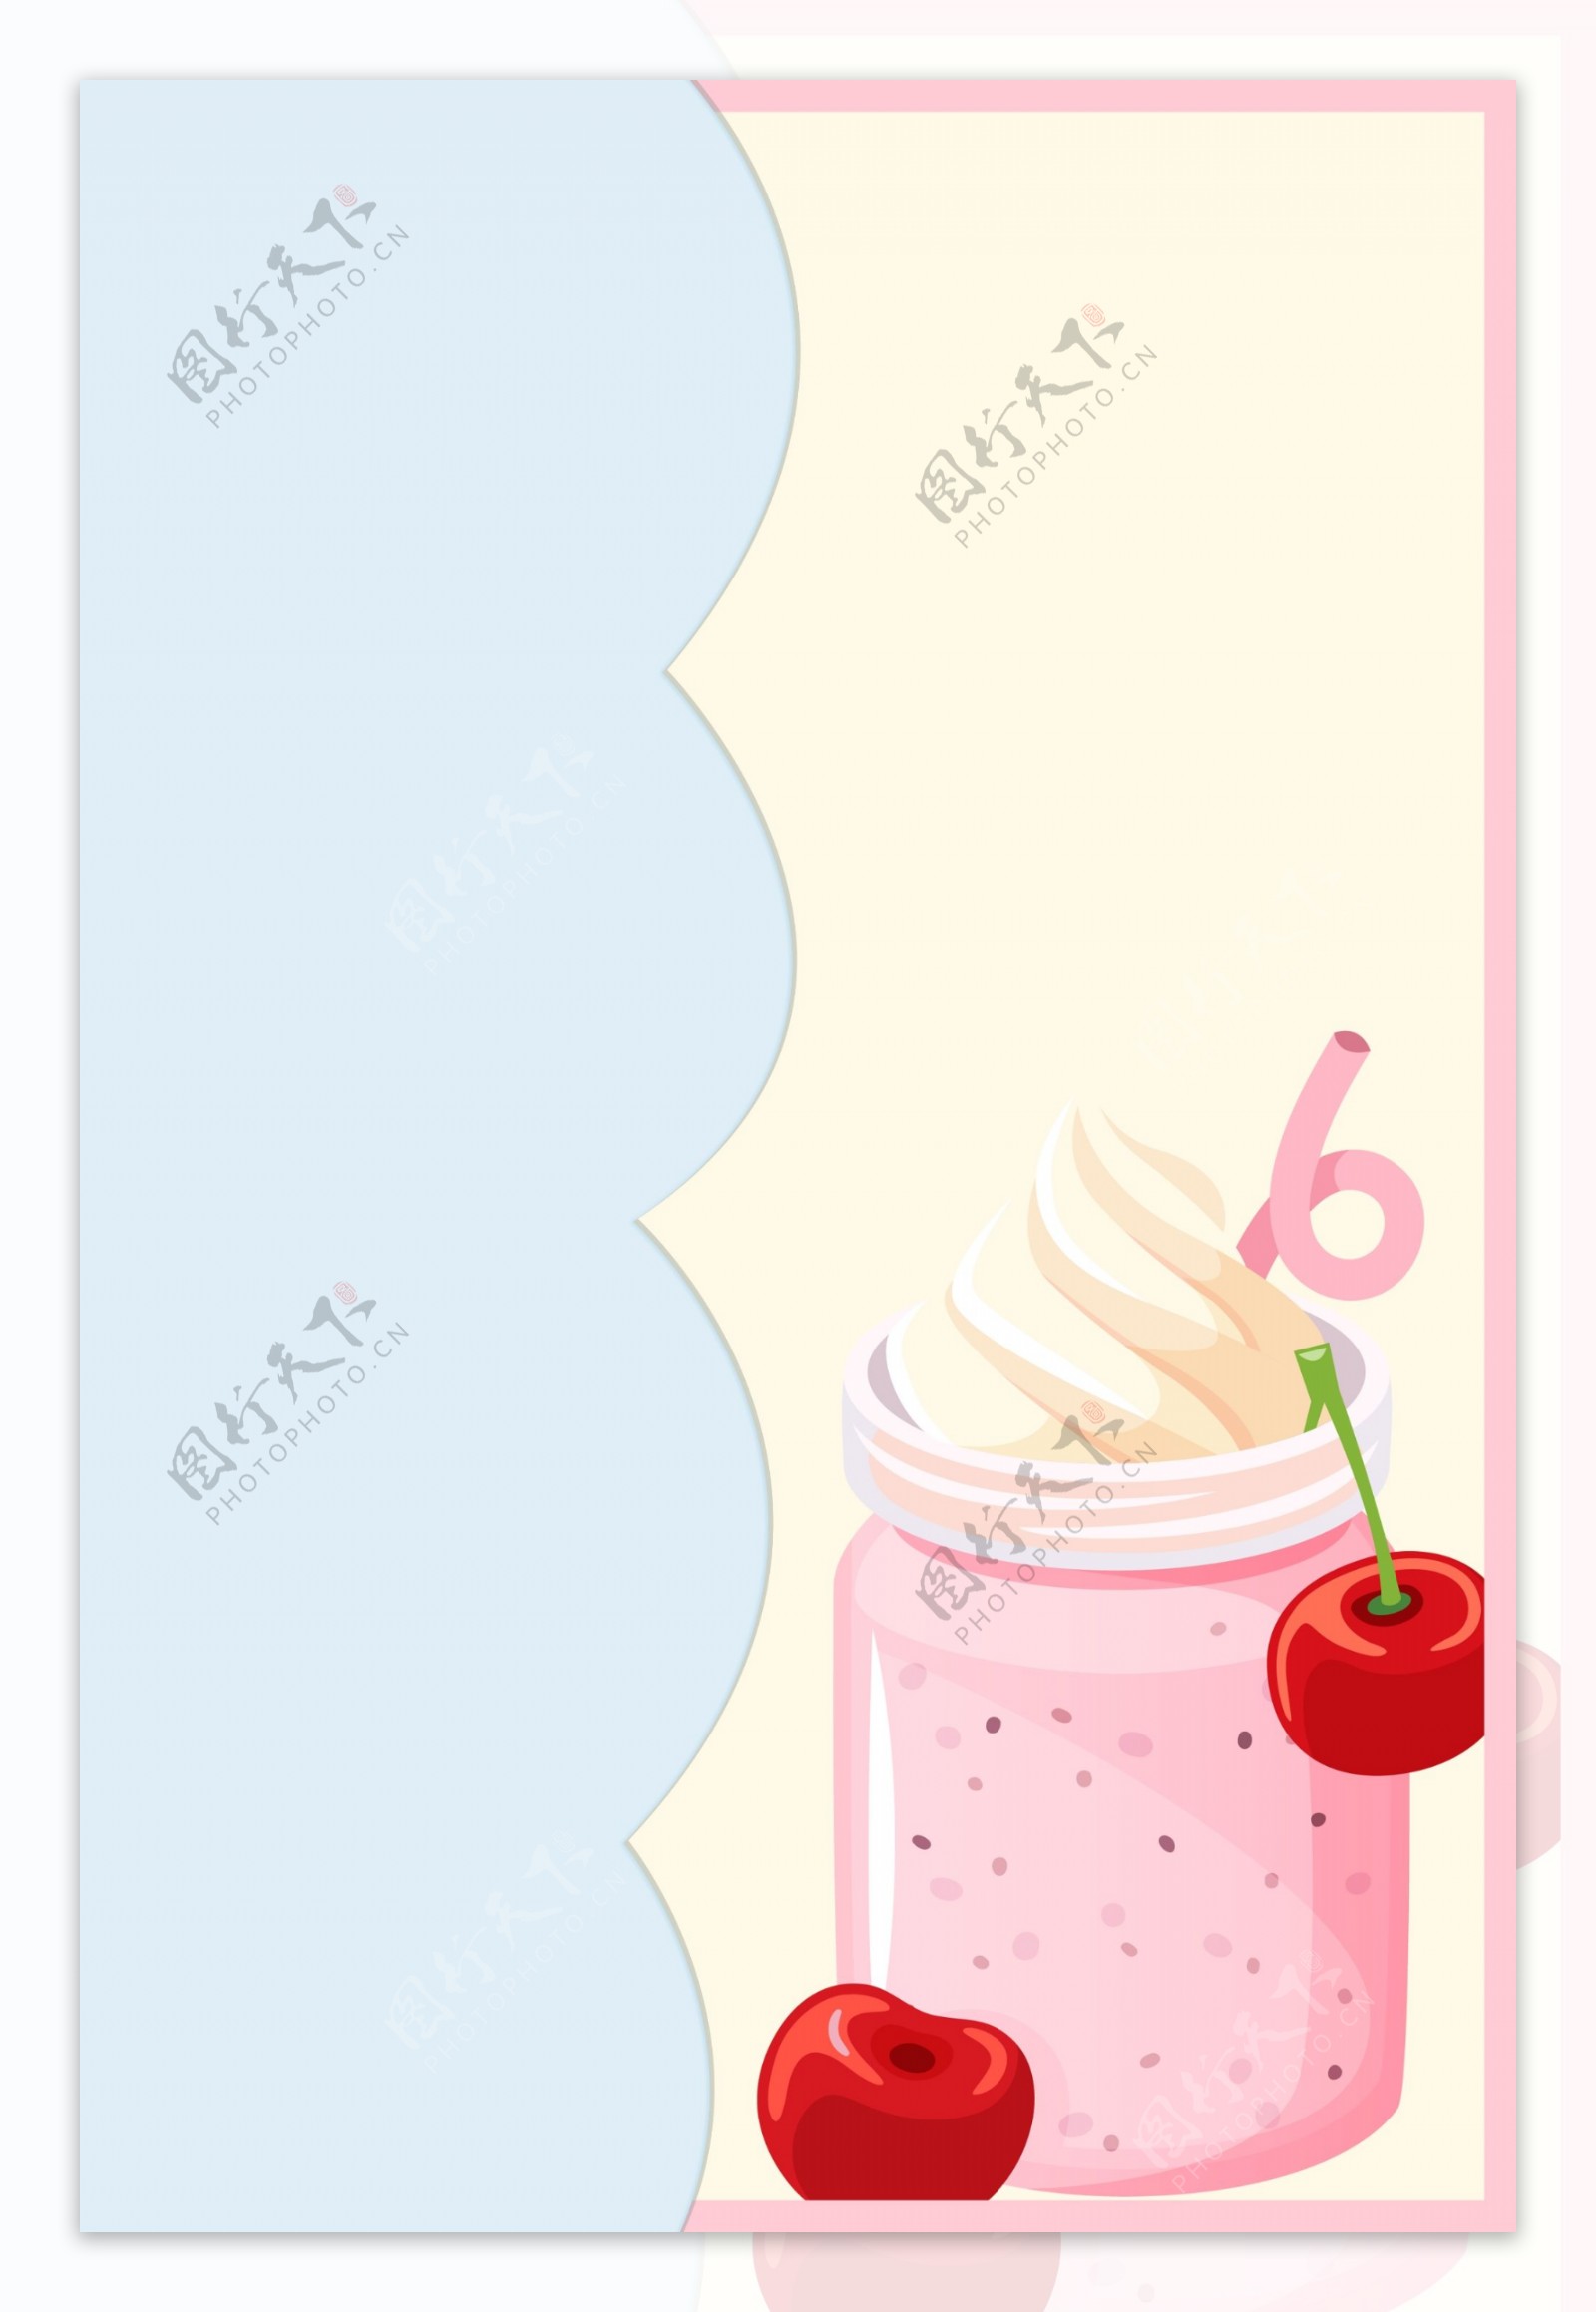 创意夏季冷饮冰淇淋海报背景素材